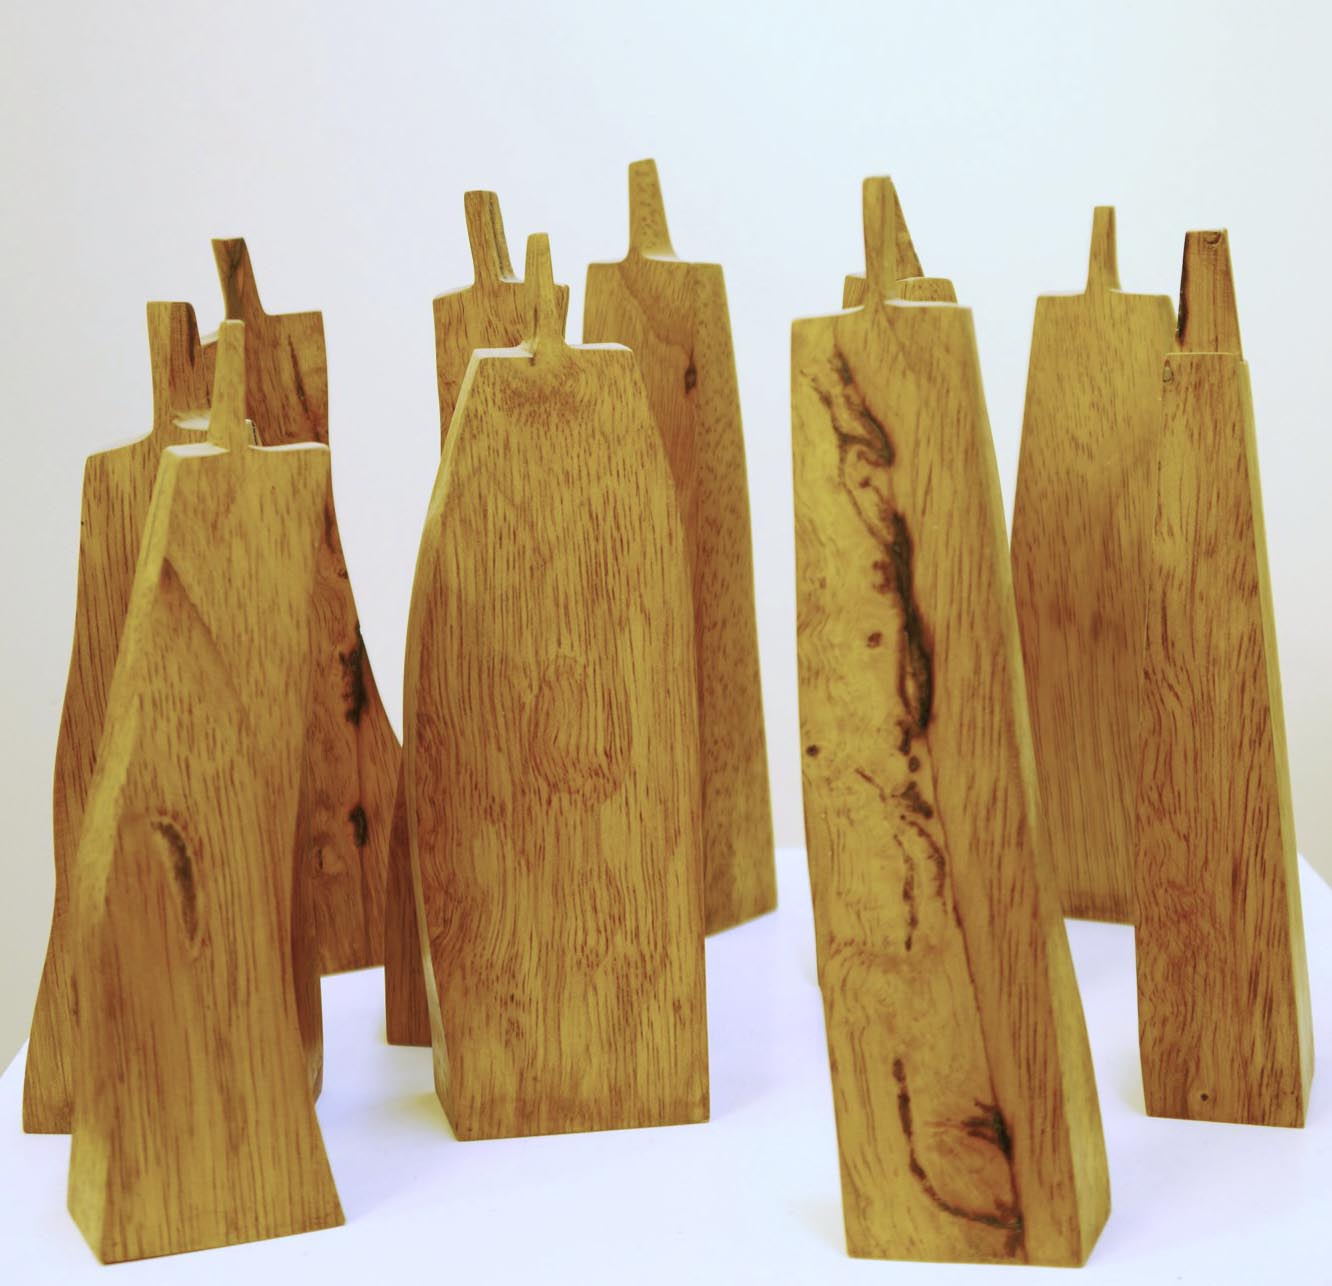 Die Menge    Holz    2011    16 cm